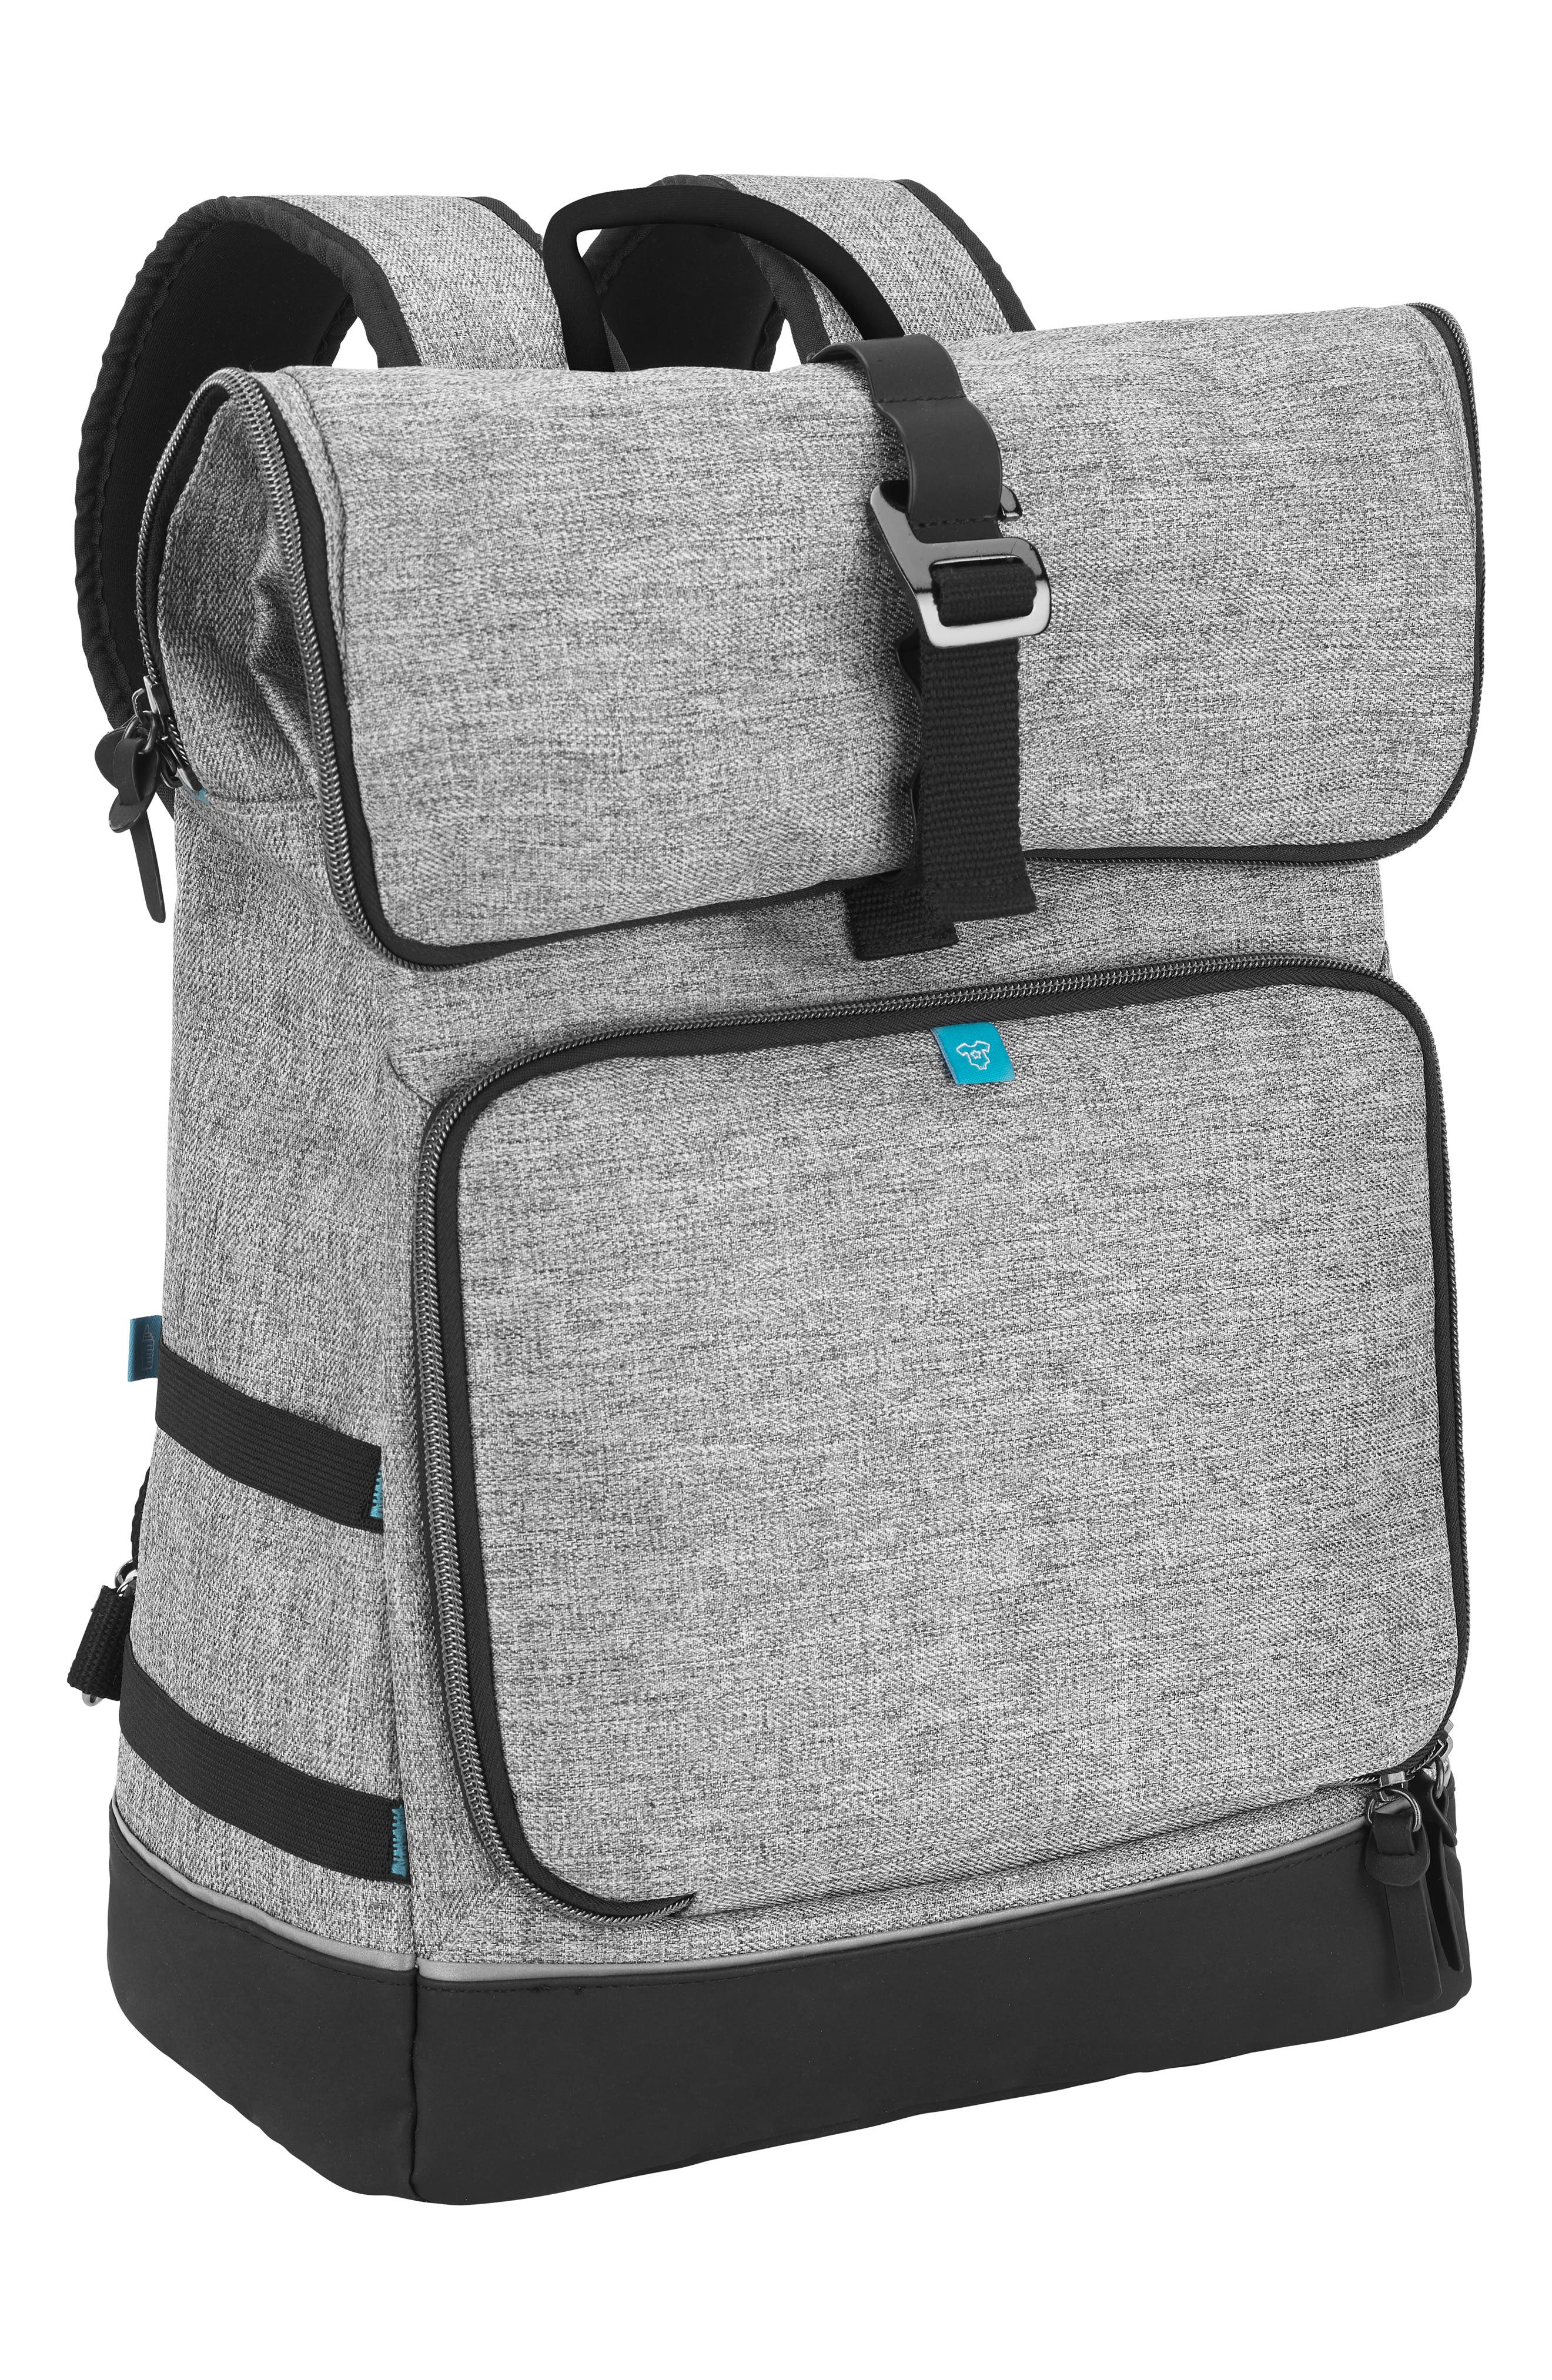 nordstrom diaper bag backpack